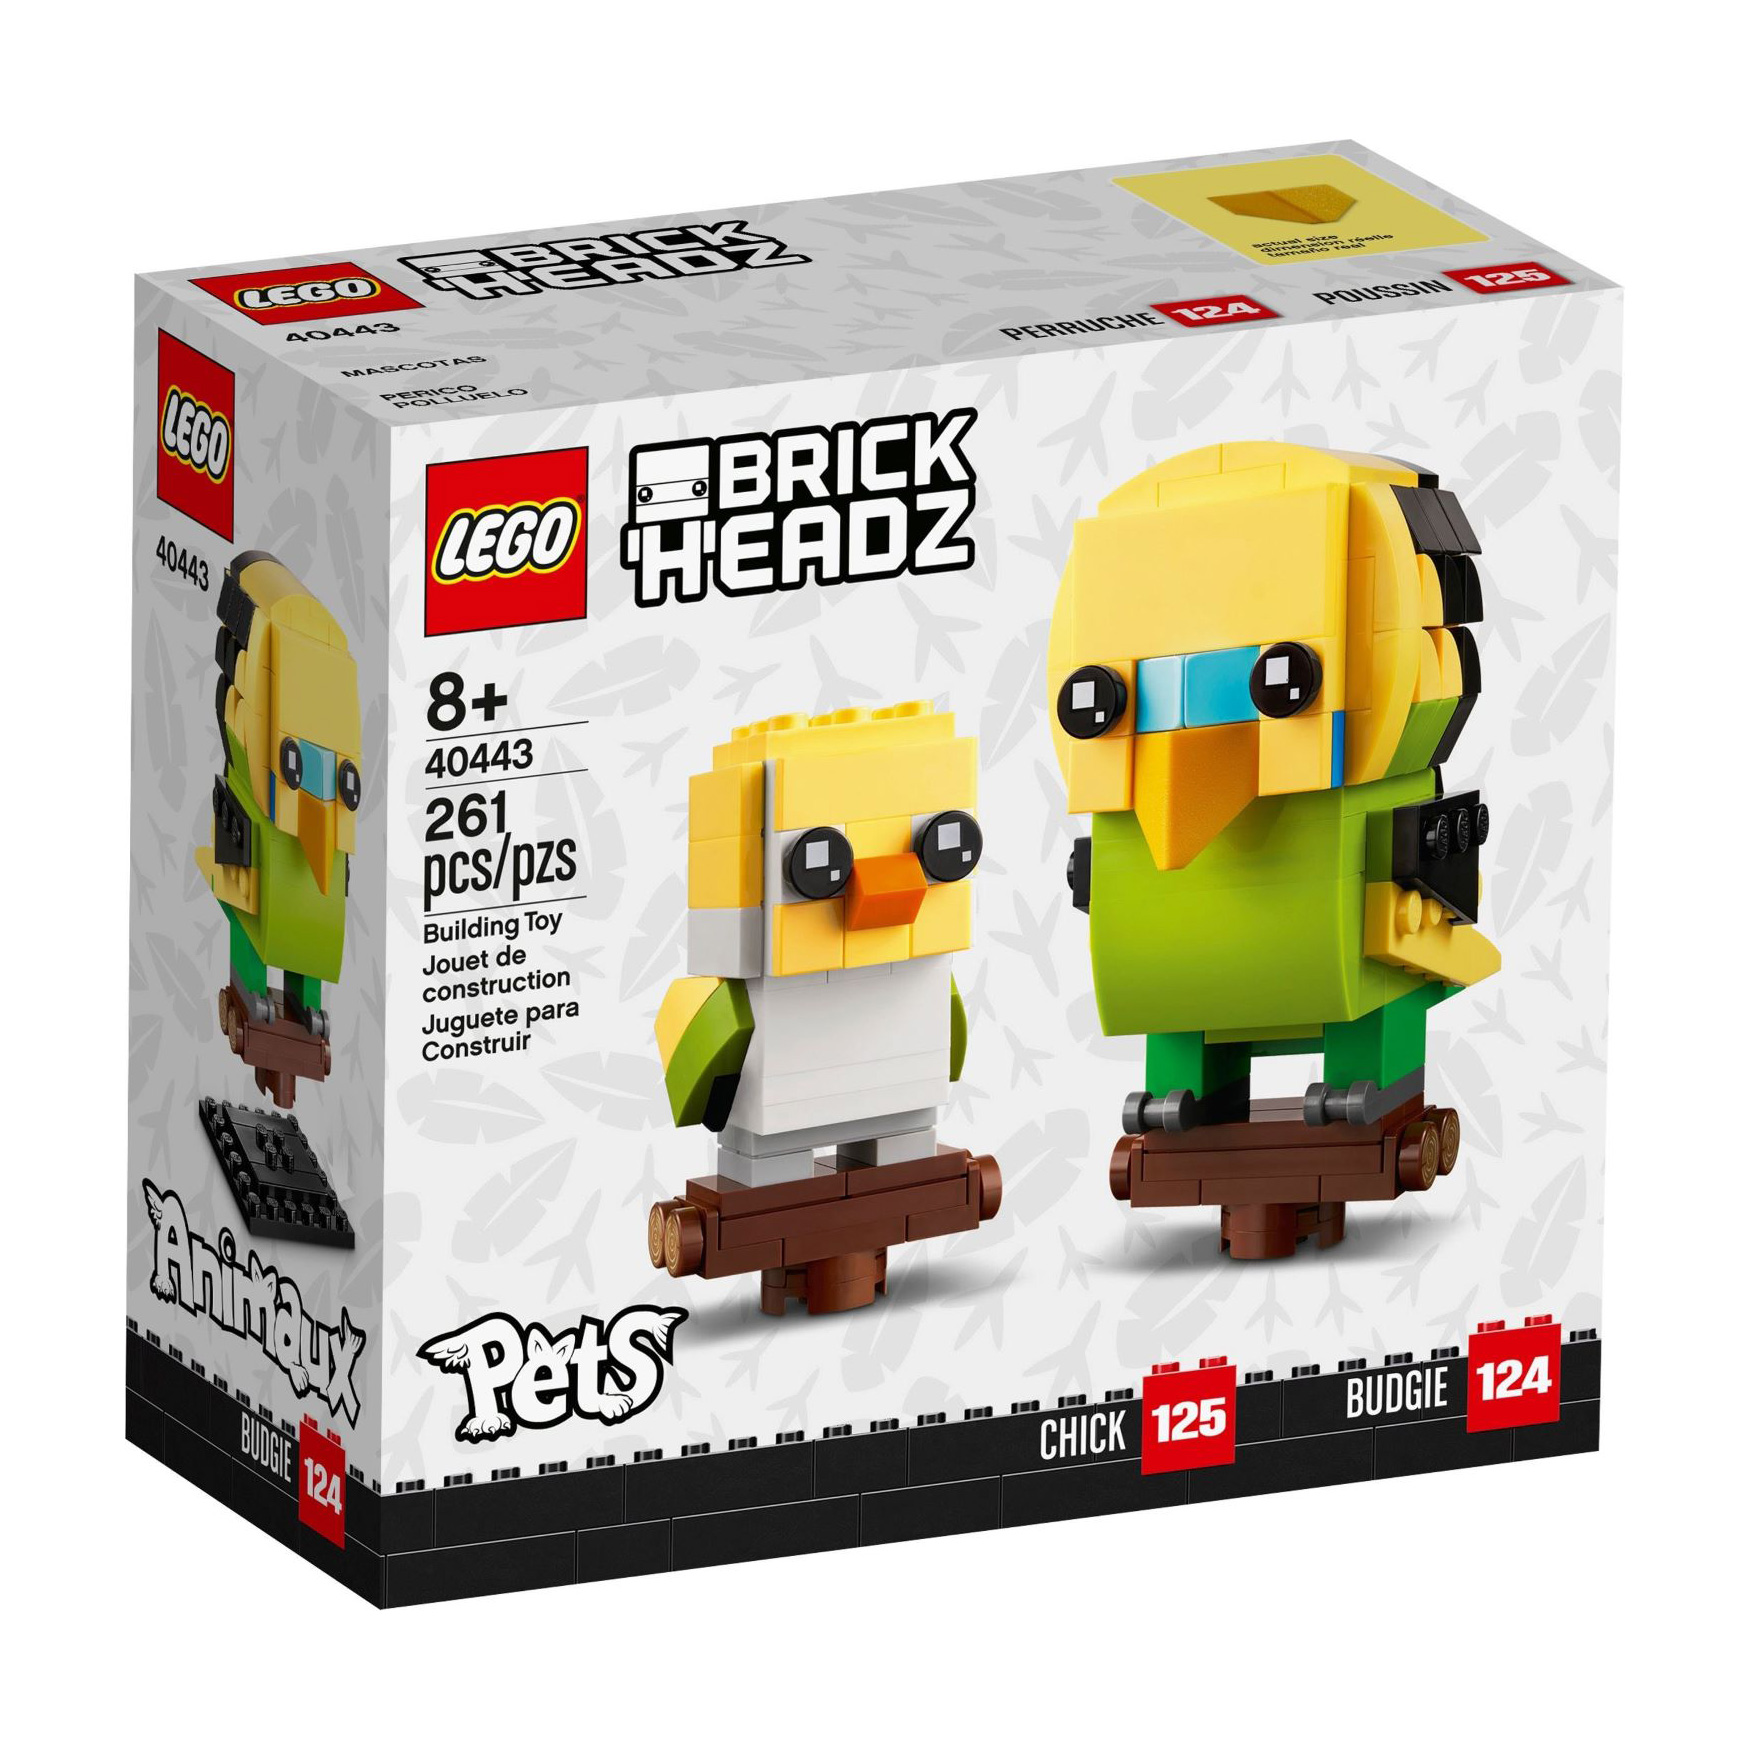 LEGO® BrickHeadz 40443 Wellensittich günstig kaufen | brickstore.at